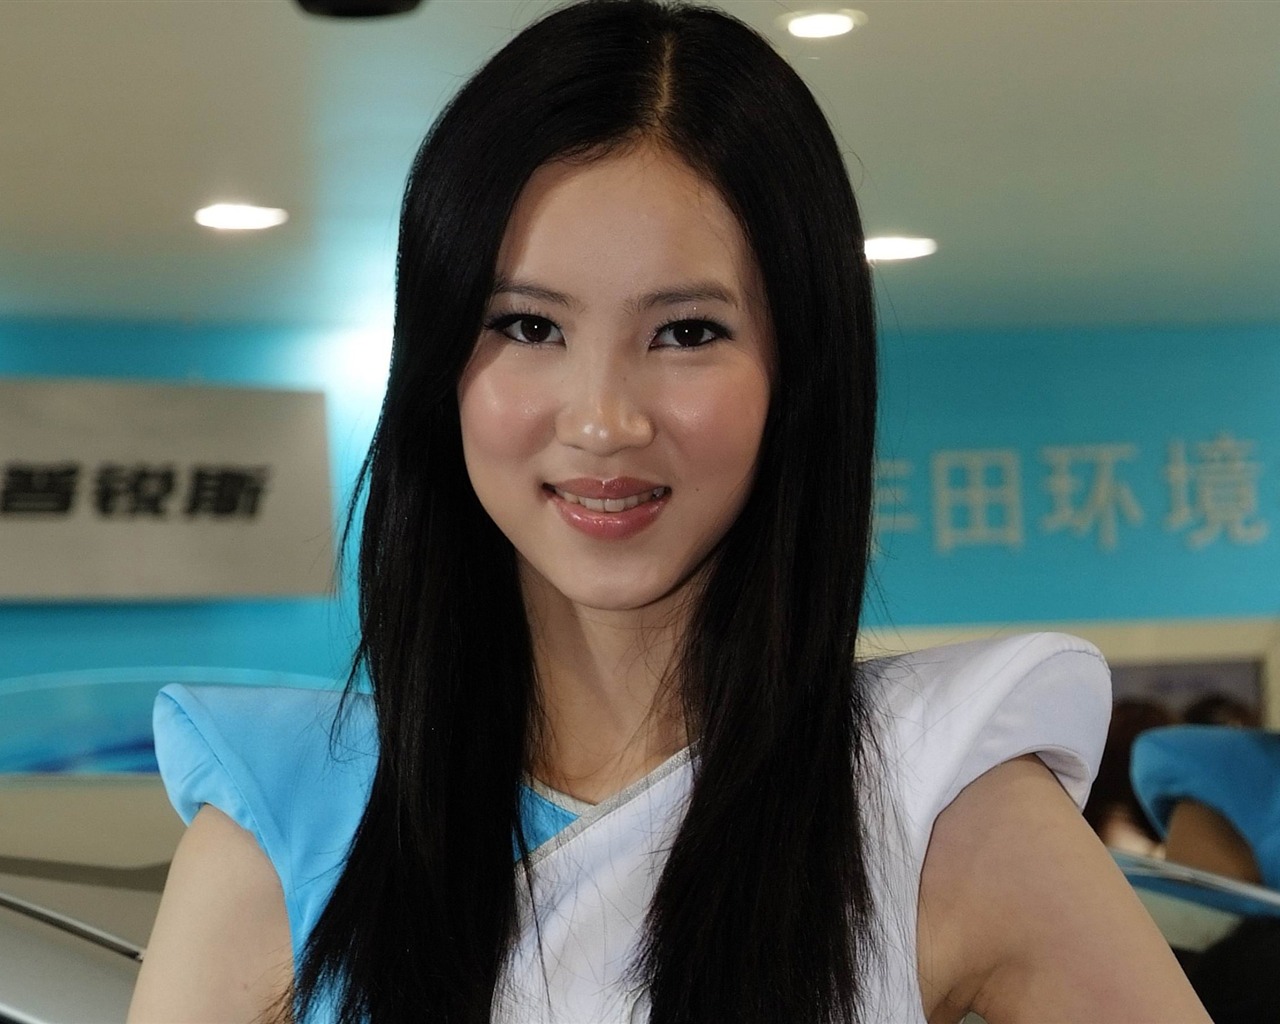 2010北京国际车展 美女车模 (螺纹钢作品)19 - 1280x1024